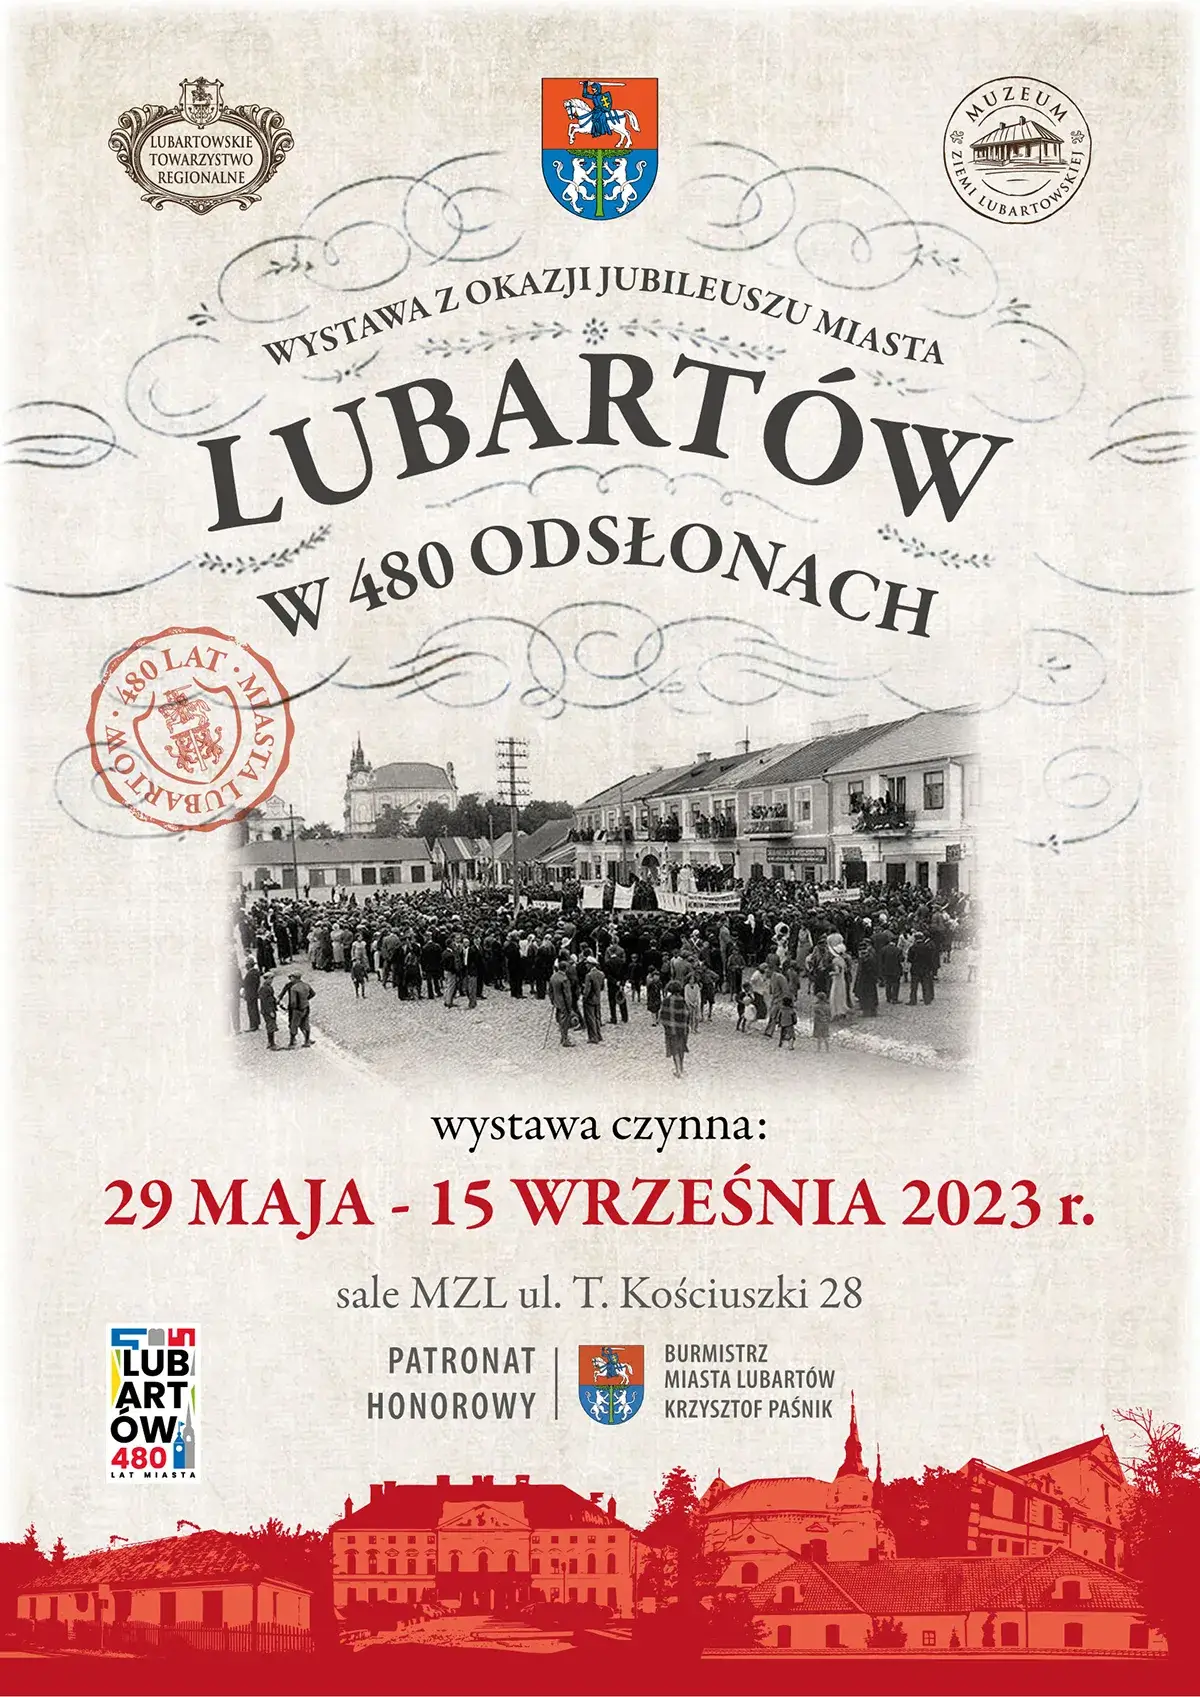 Plakat promujący wystawę Lubartów w 480 odsłonach